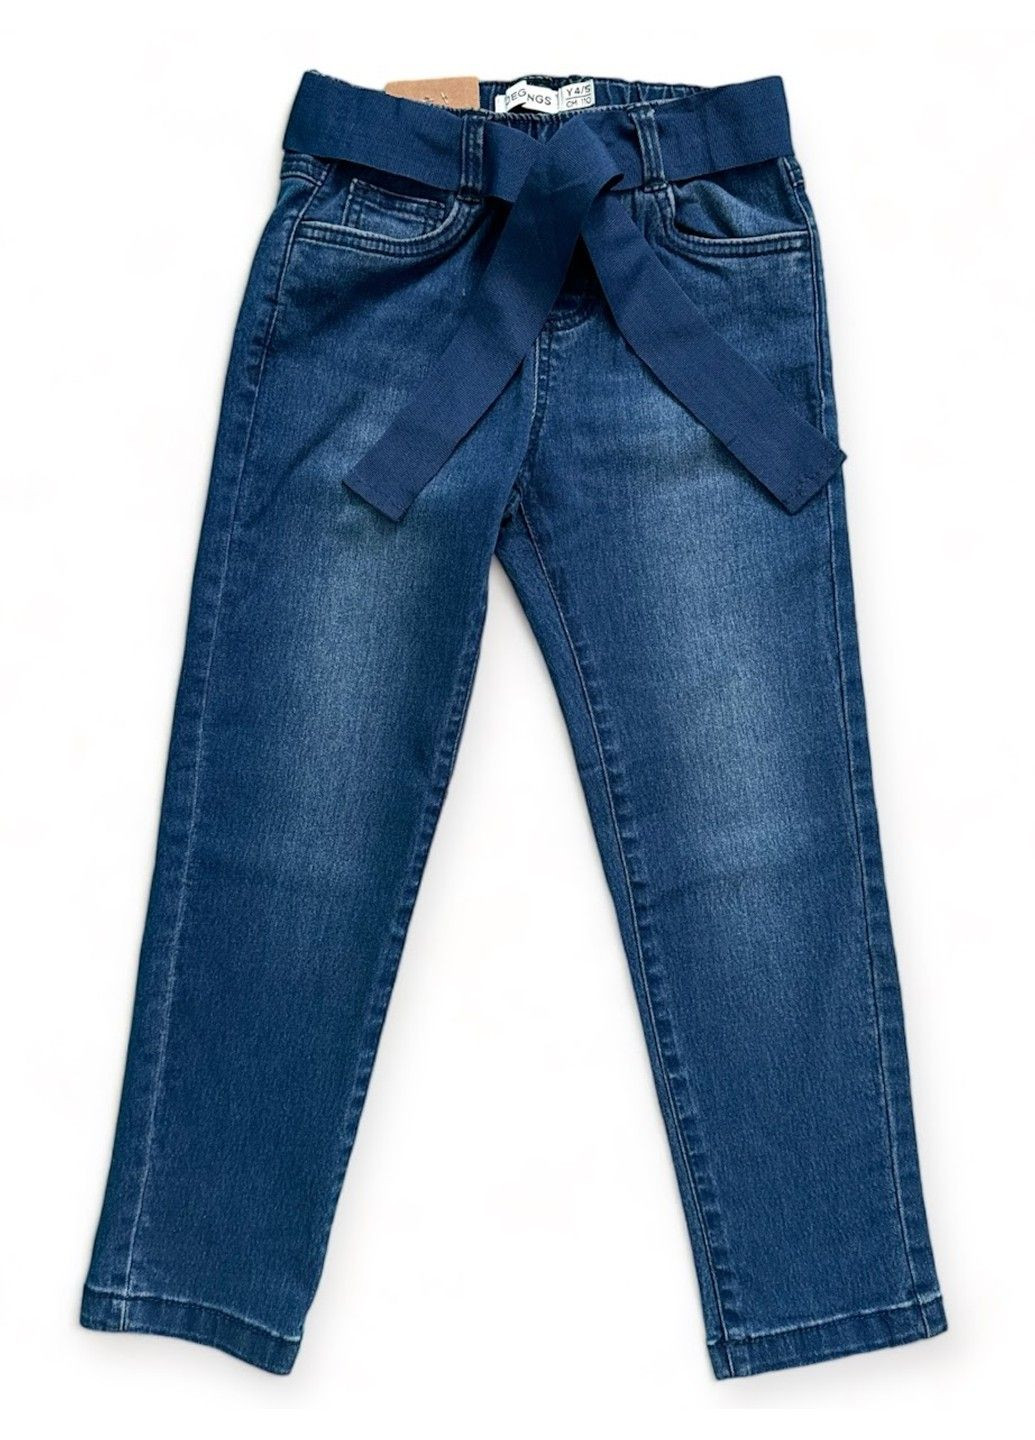 Синие джинсы прямые стрейчевые OVS